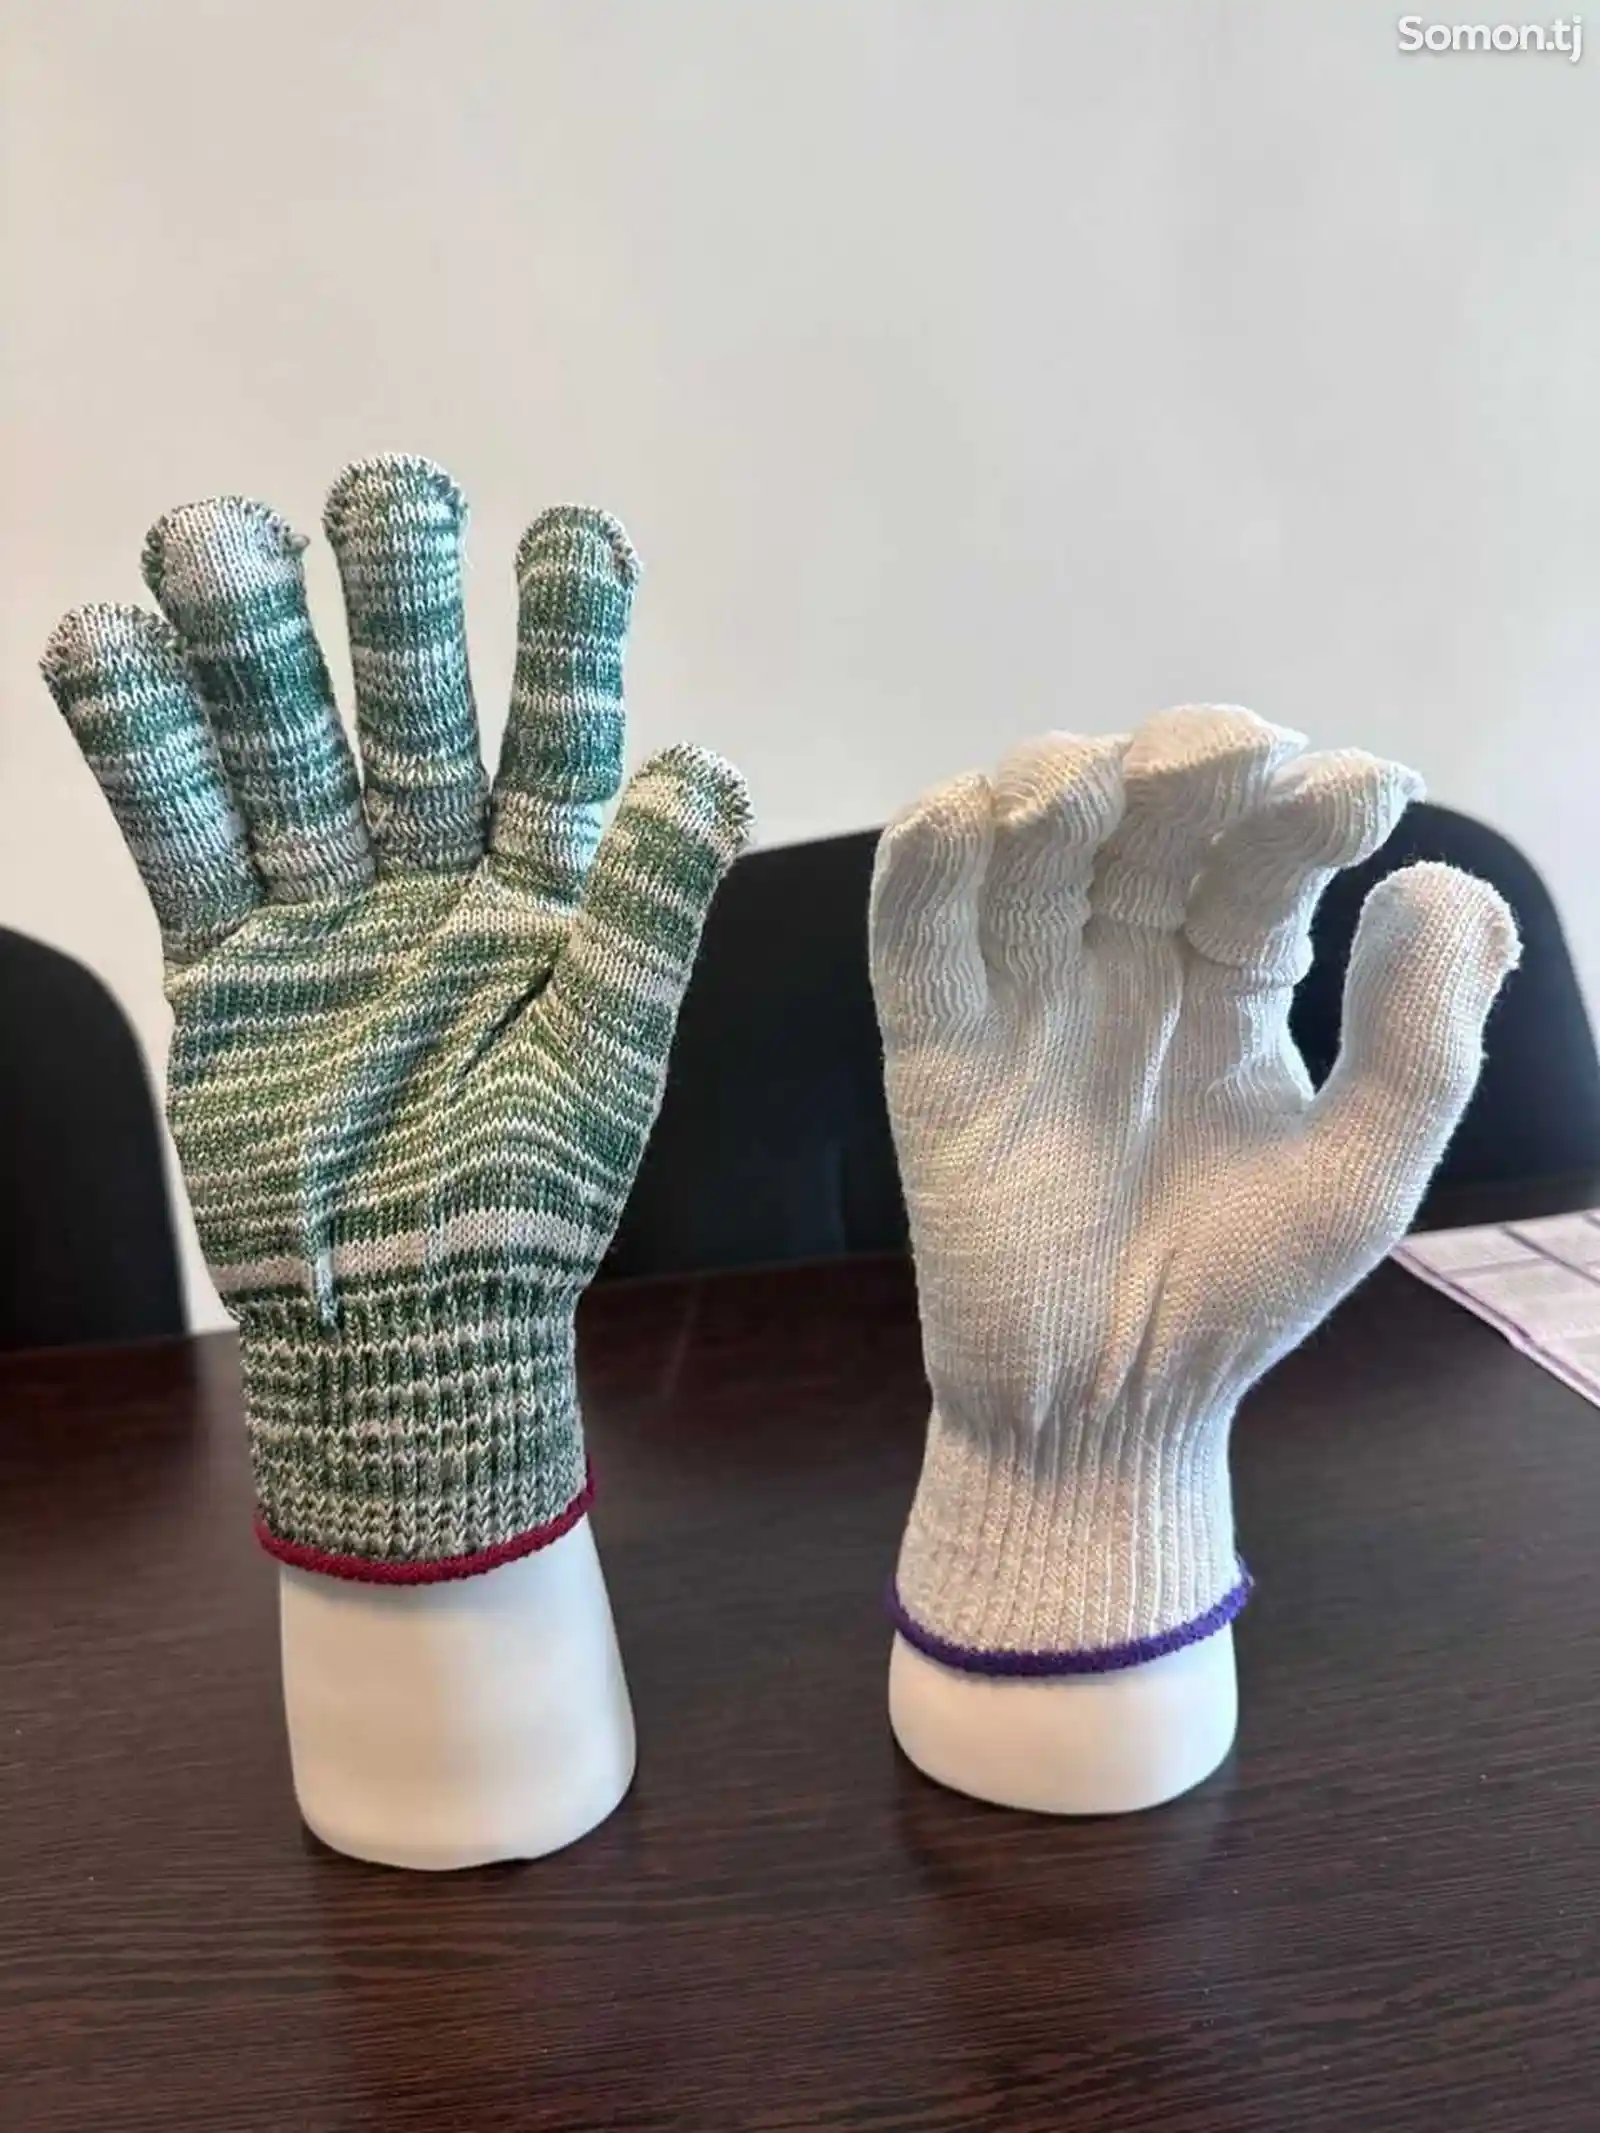 Защитите свои руки с профессиональными строительными перчатками-6